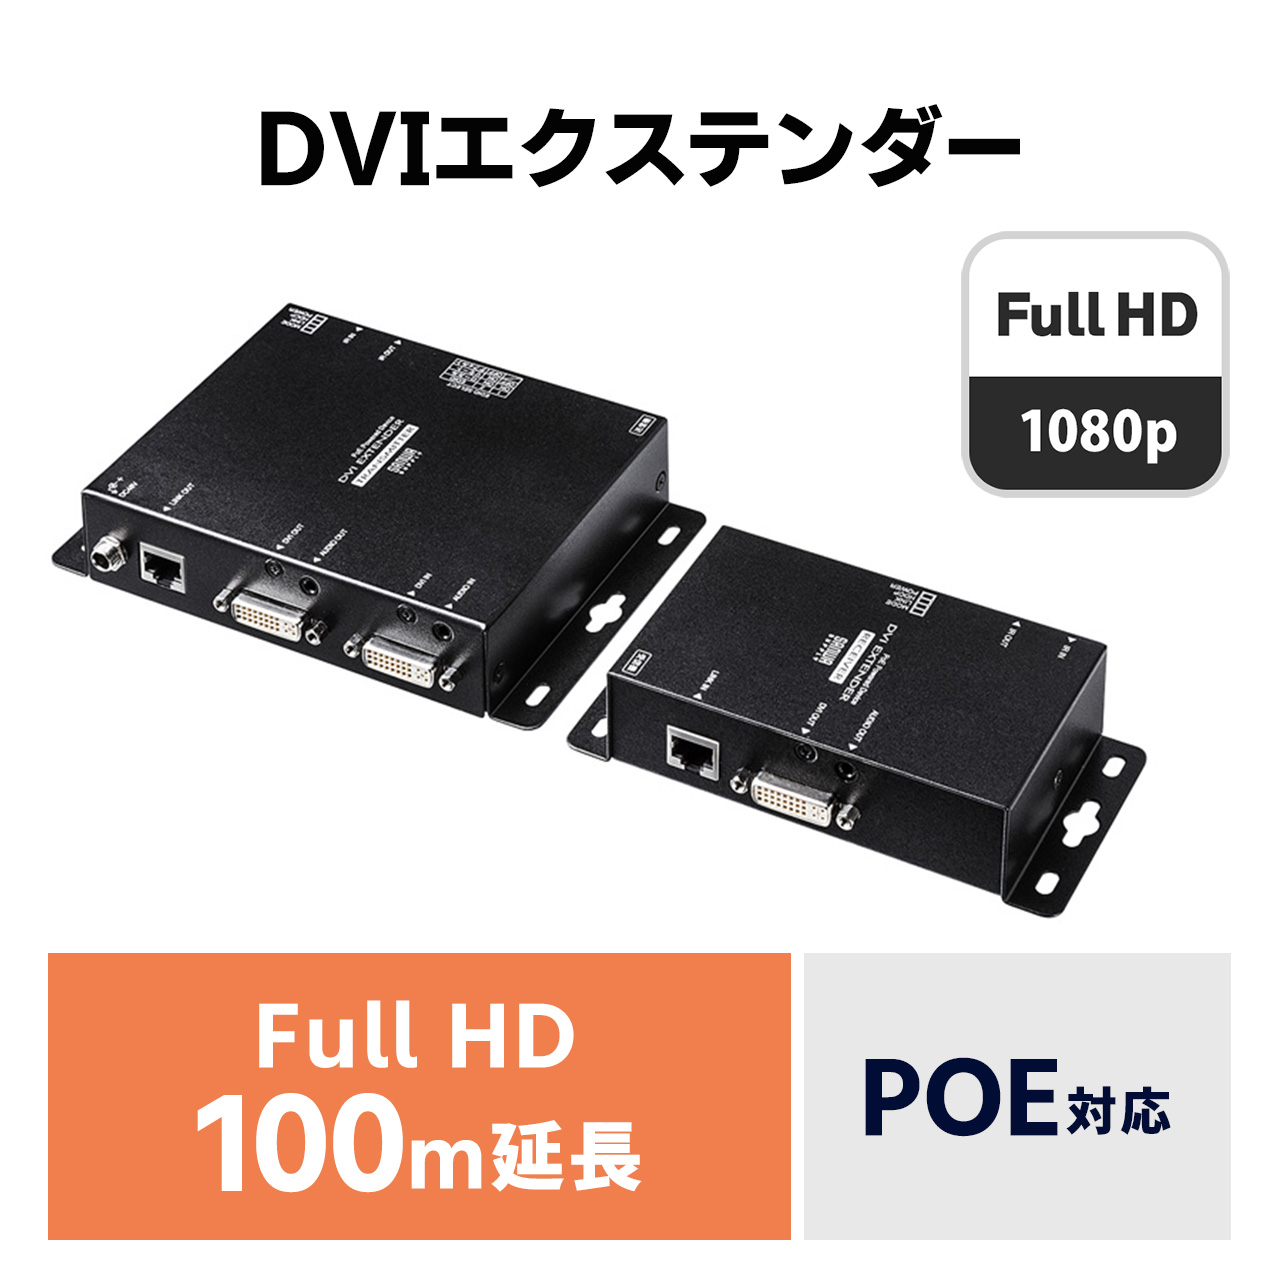 PoE対応DVIエクステンダー セットモデル（VGA-EXDVPOE）